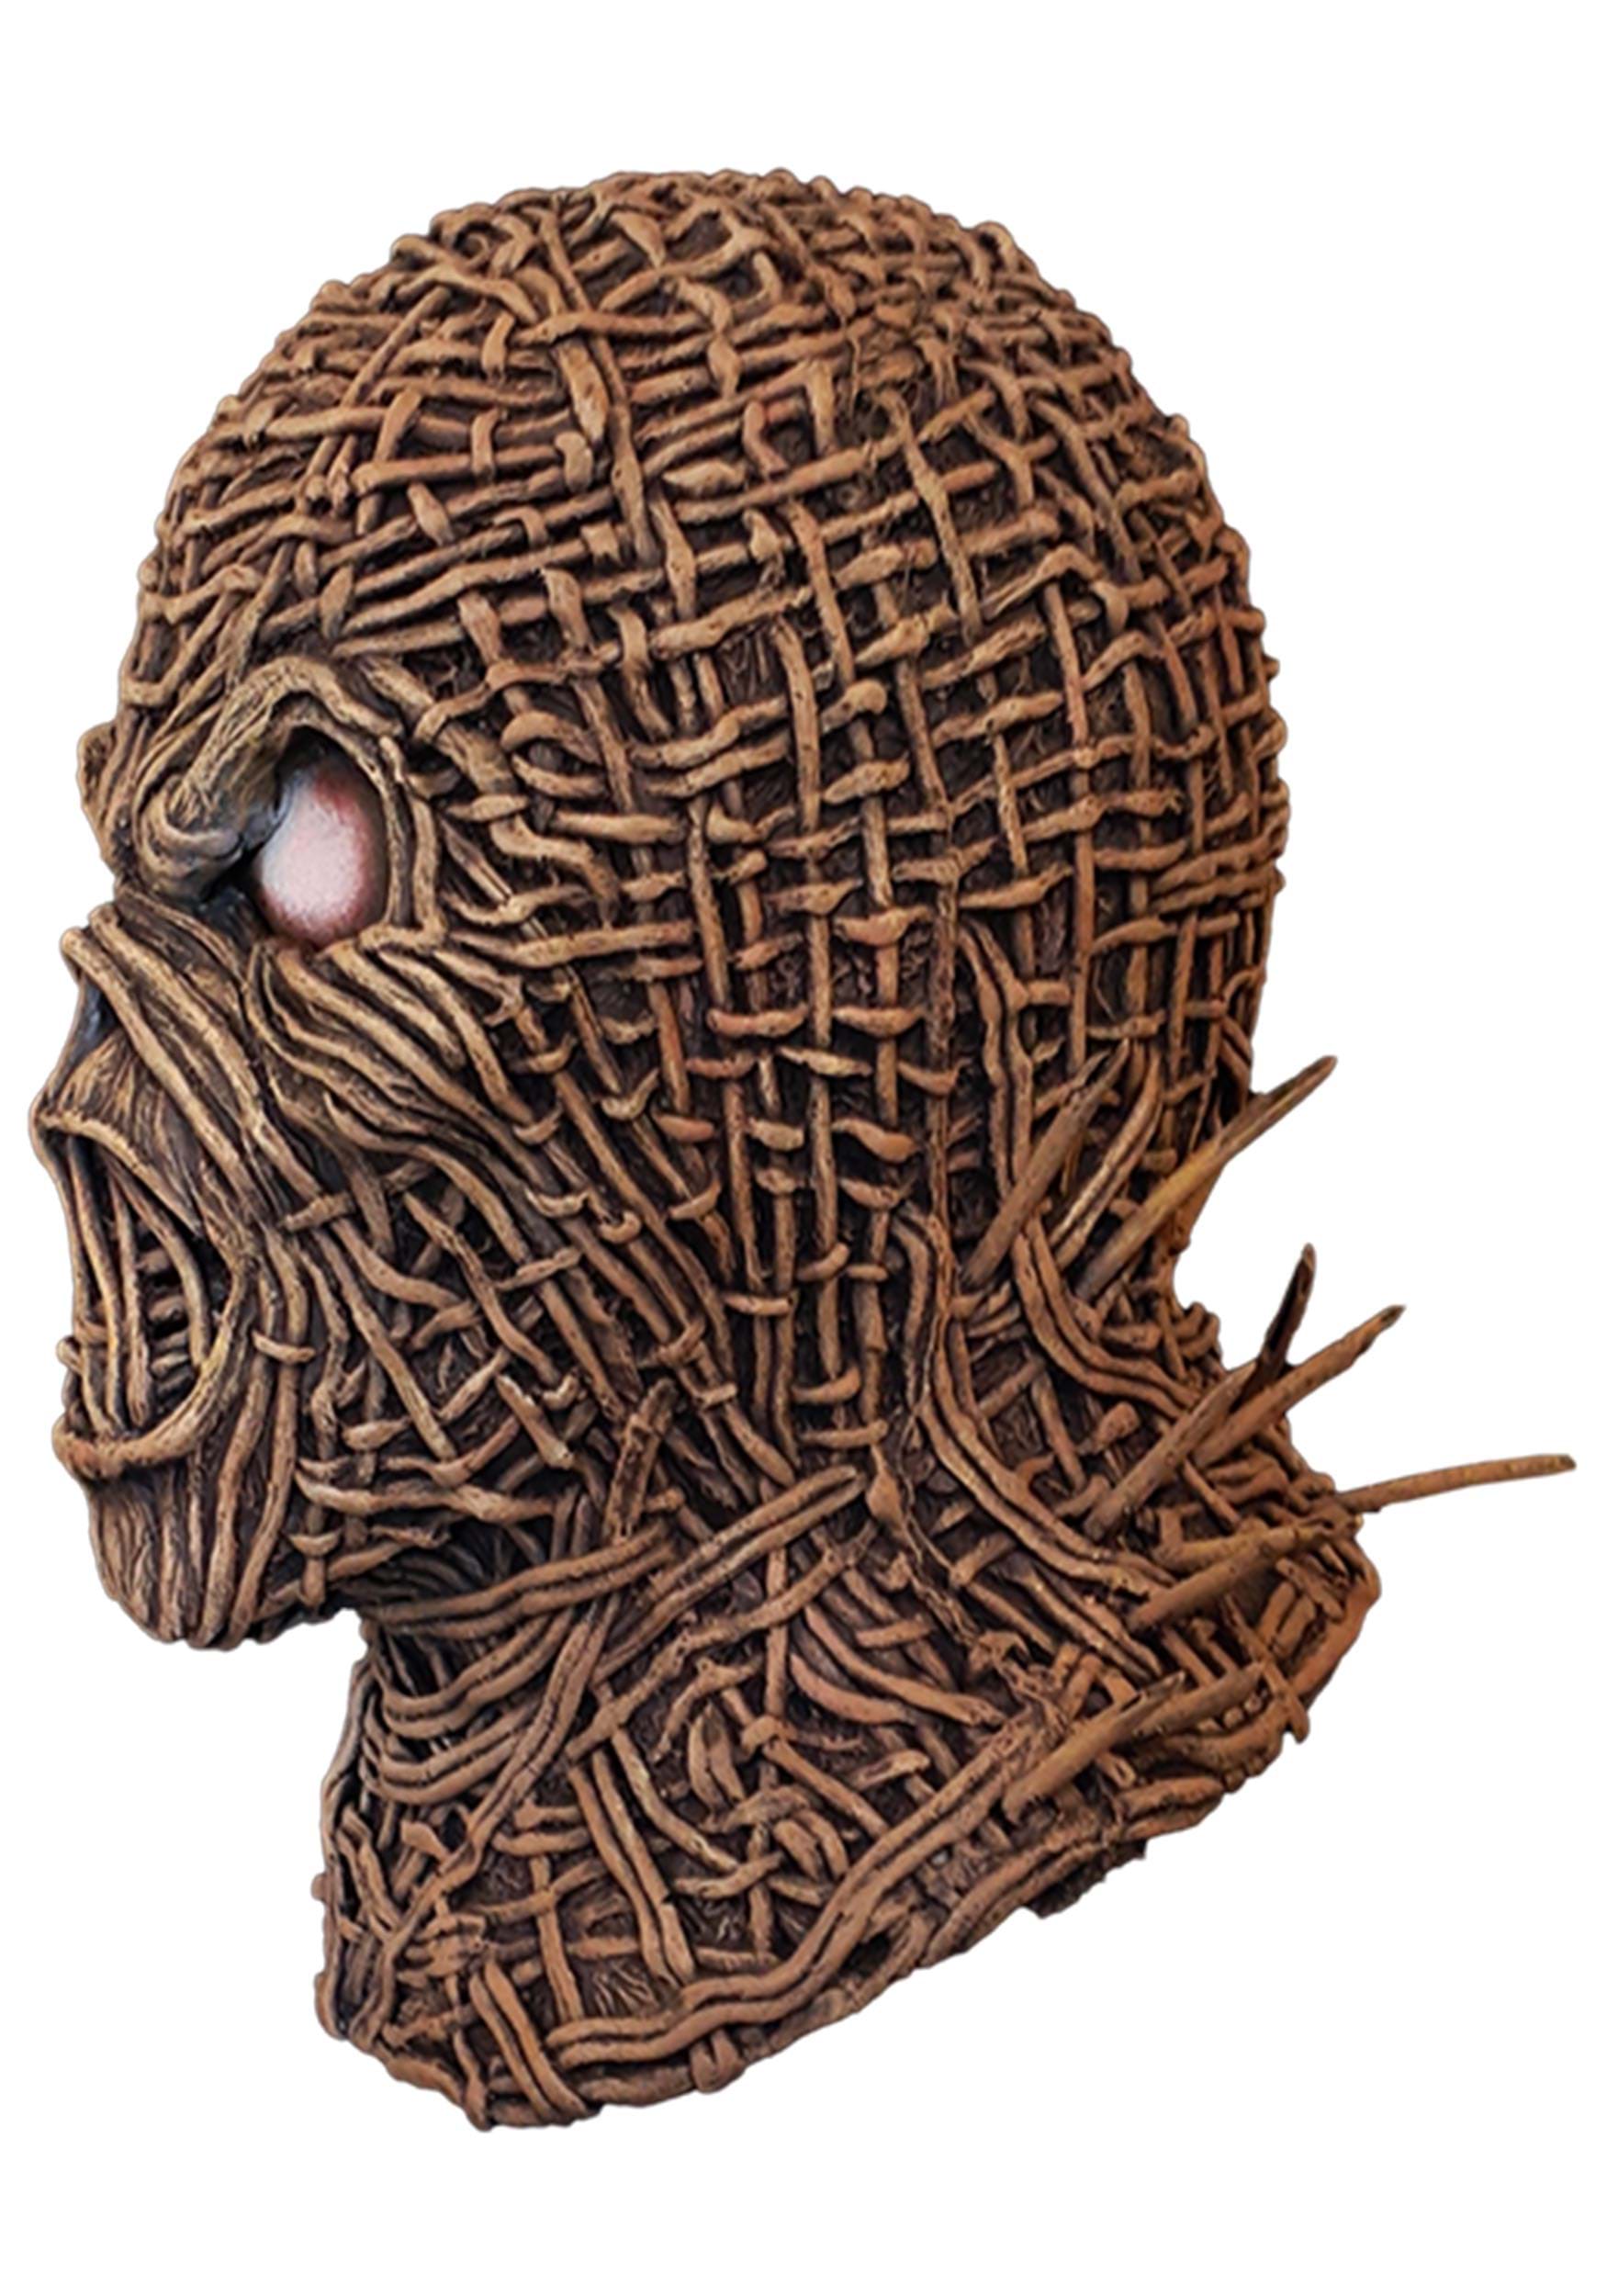 Iron Maiden The Wicker Man Halloween Mask